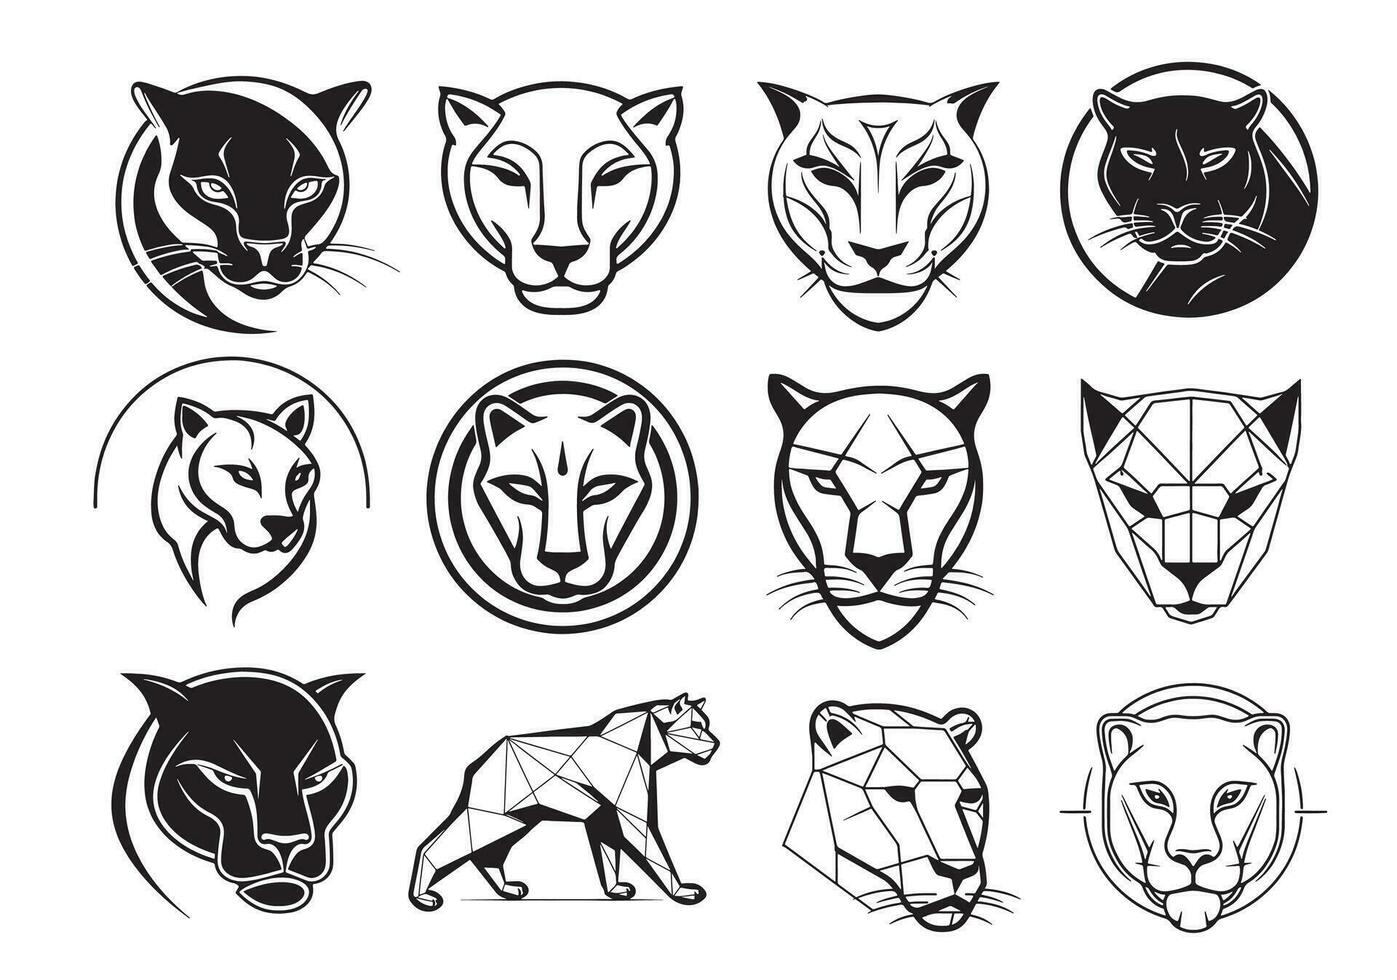 reeks van logo panter portret hand- getrokken schetsen vector illustratie, wild dieren